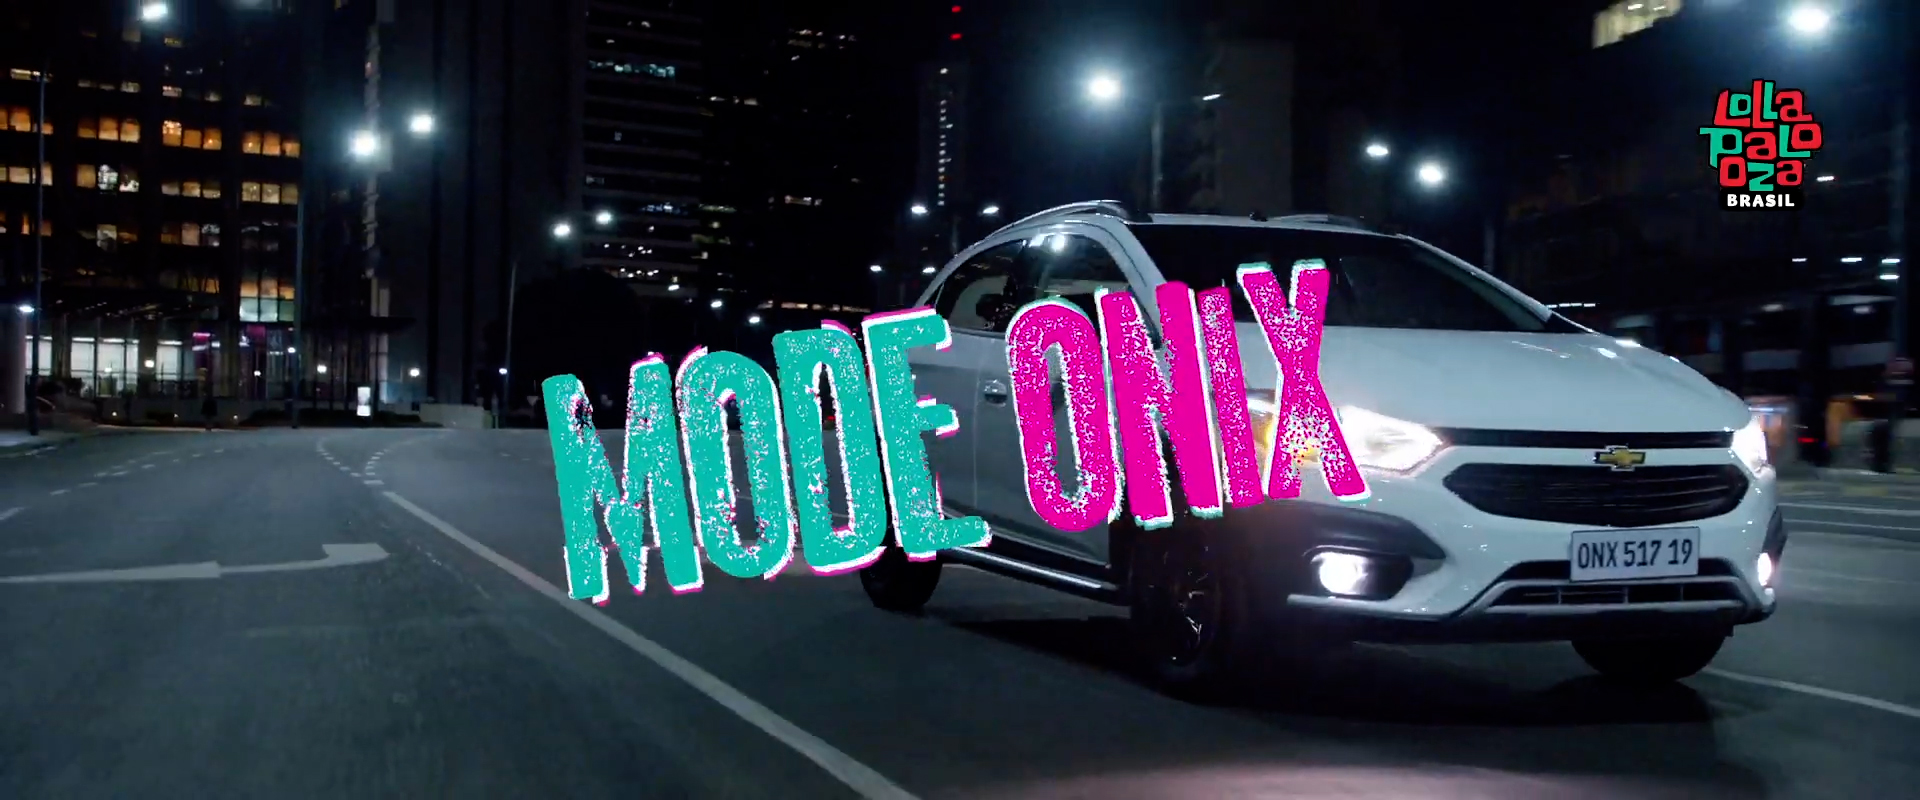 À noite, o Chevrolet Onix percorre uma rua. Há o logo Lollapalooza e o texto: Mode Onix